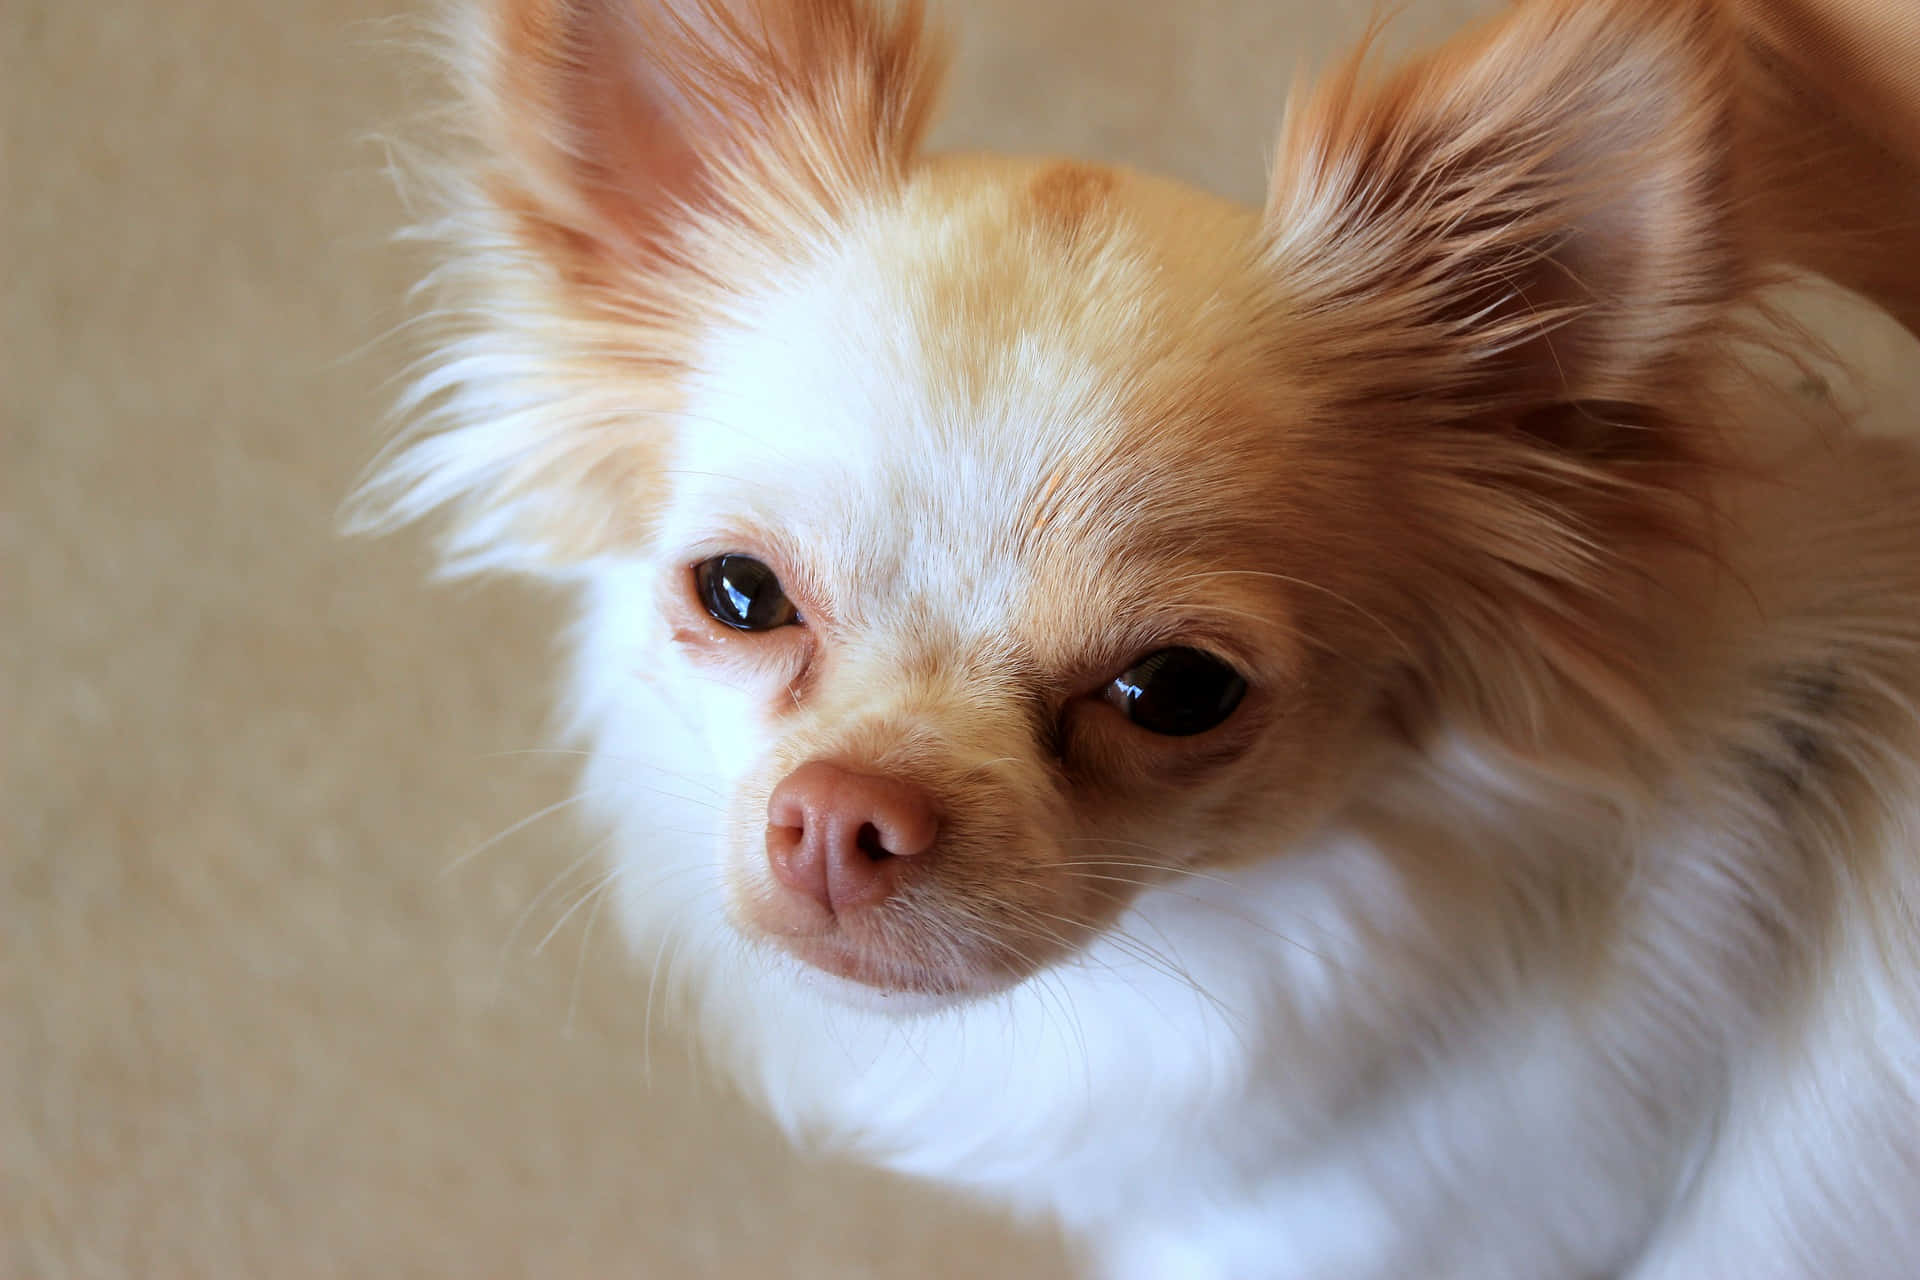 Entilfreds Chihuahua, Der Nyder En Lur.